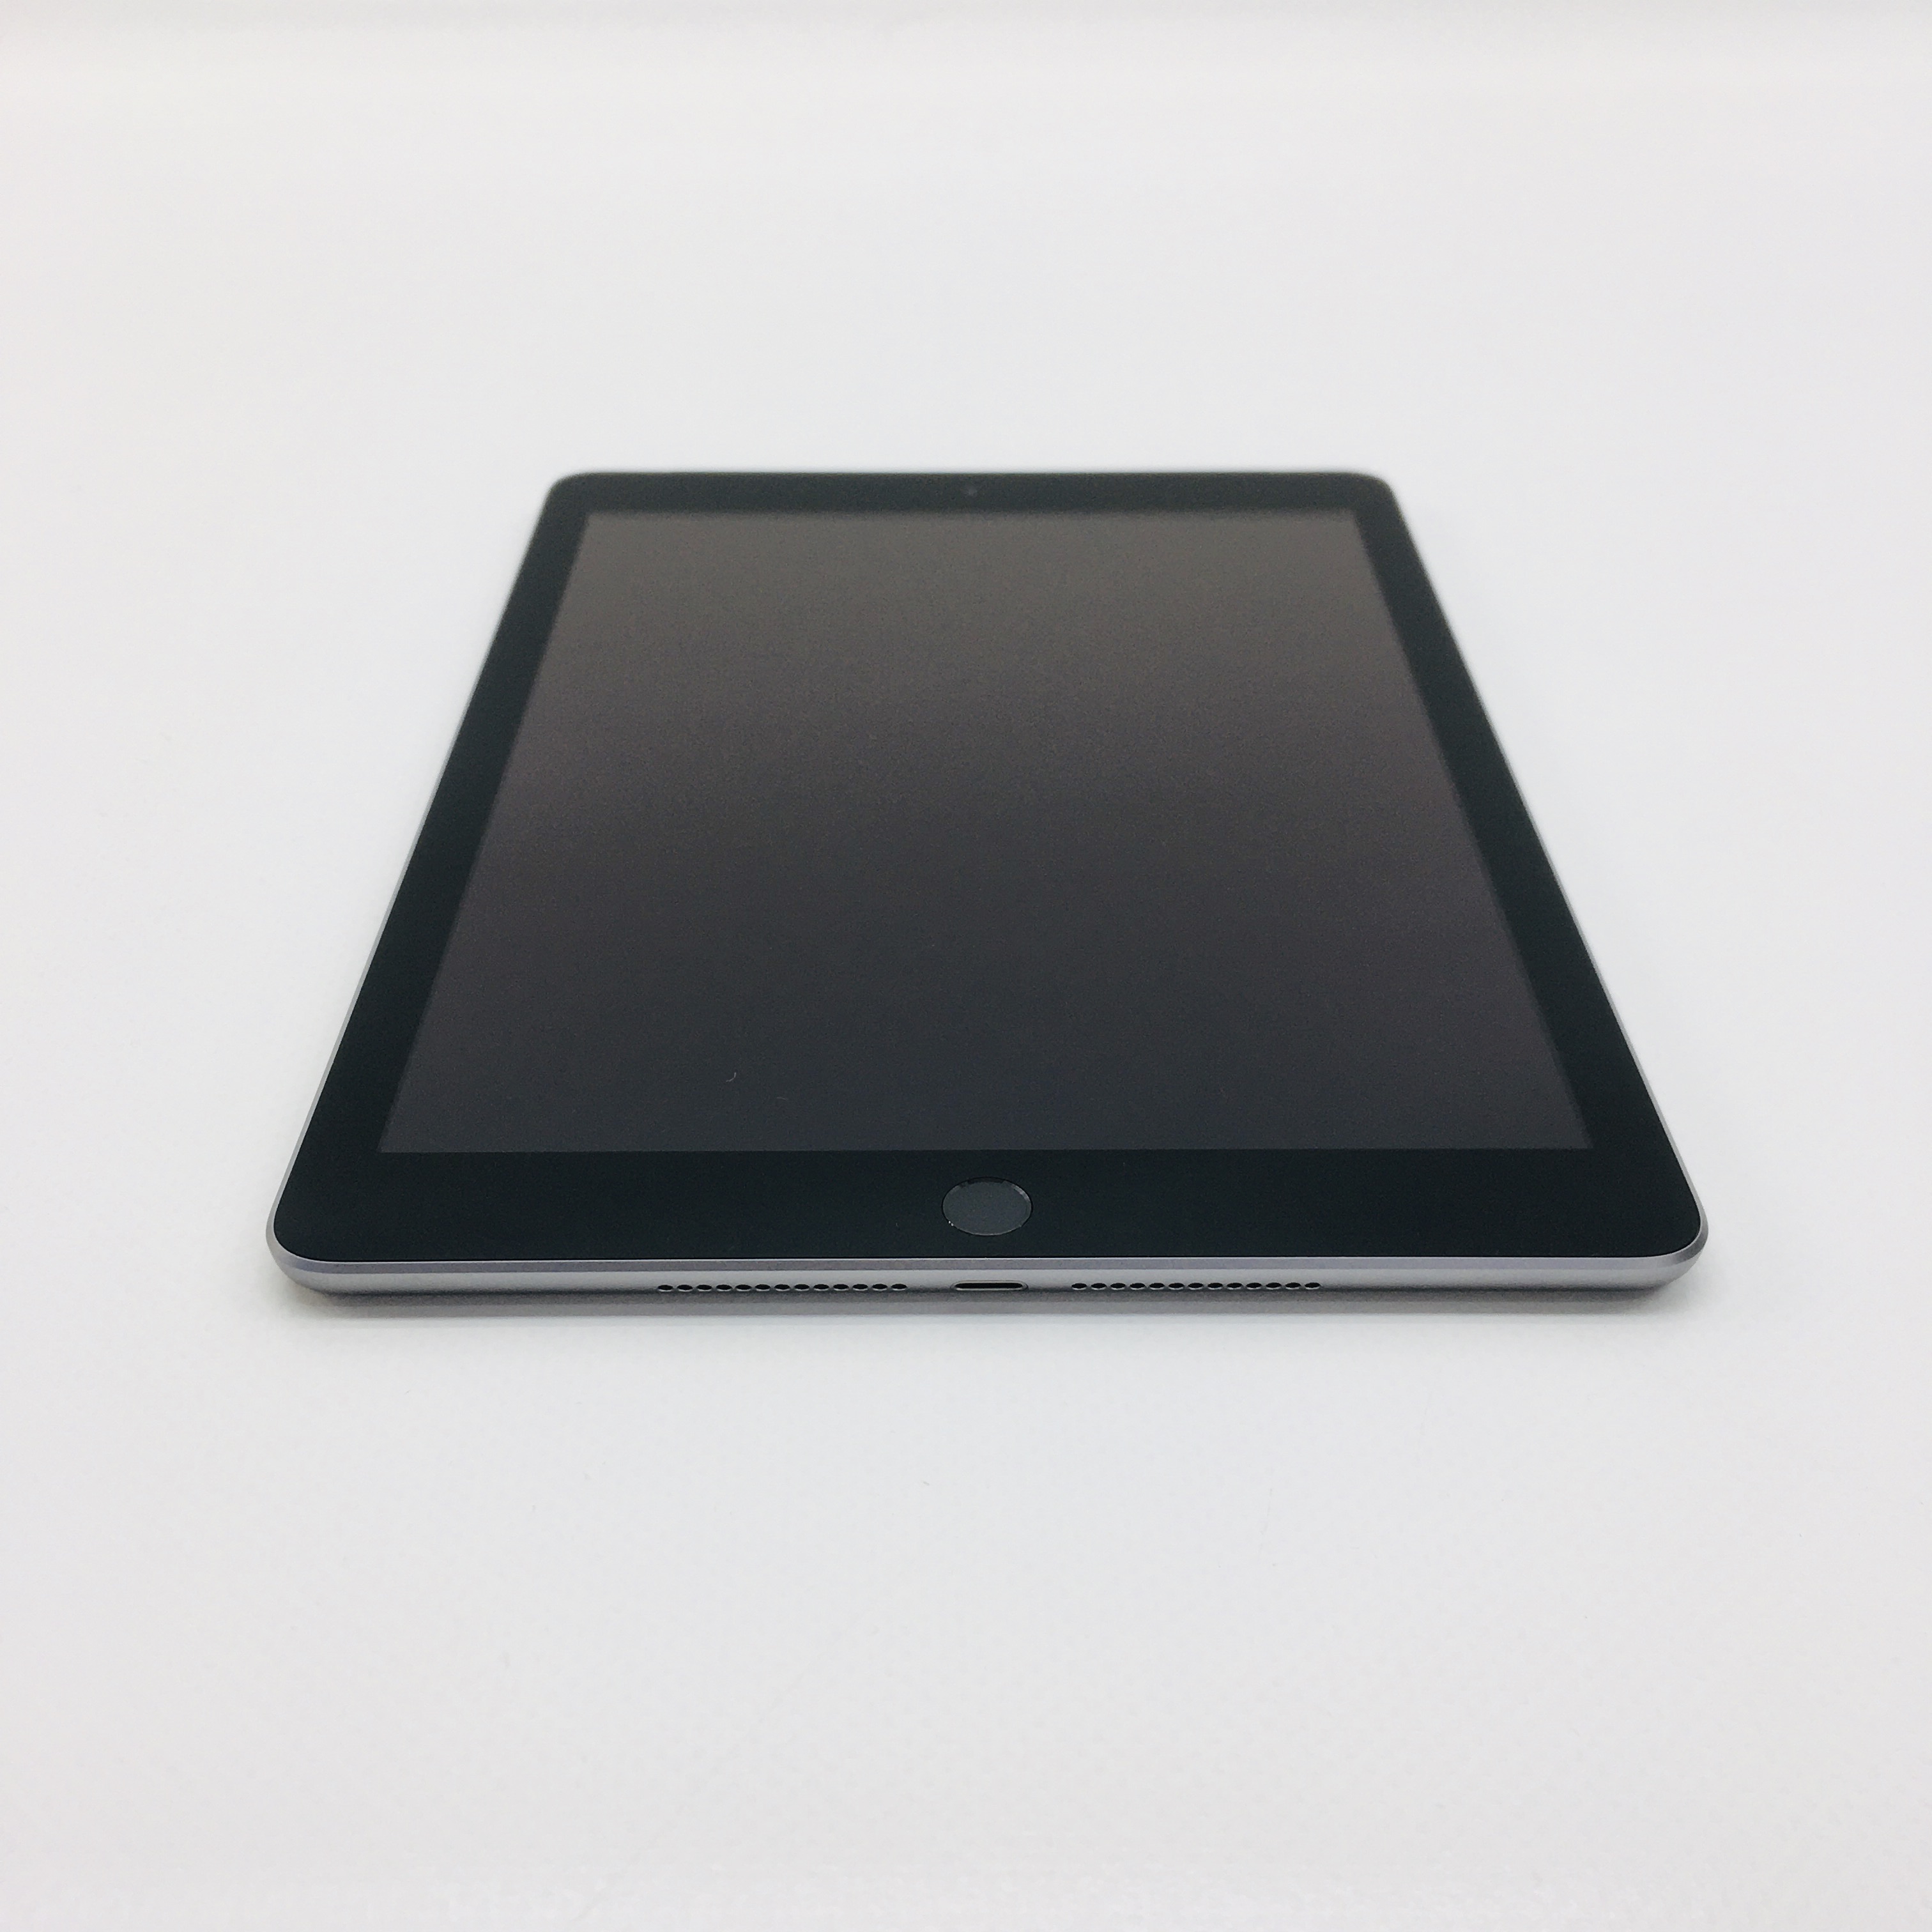 iPad 5 Wi-Fi + Cellular 128GB, 128GB, Space Gray, image 1